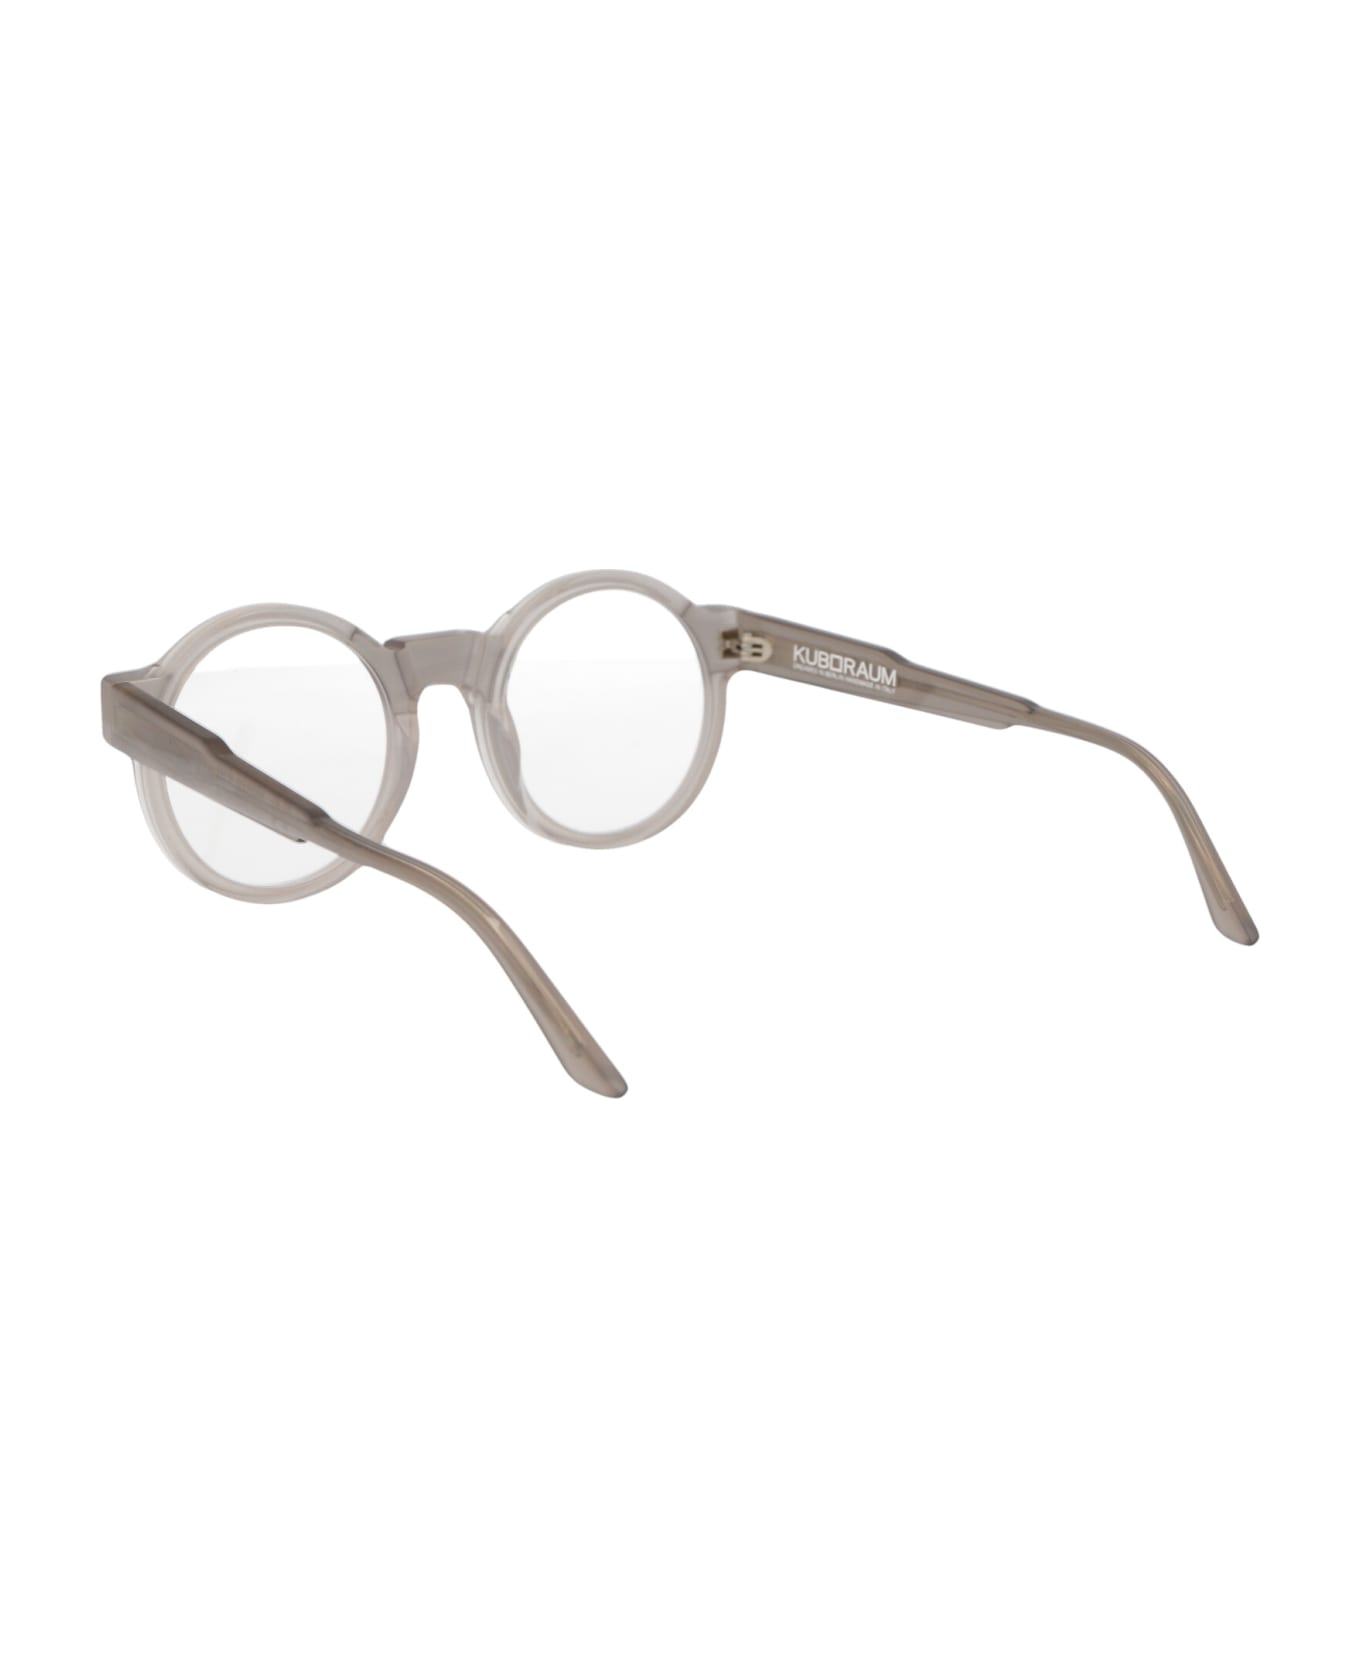 Kuboraum Maske K10 Sunglasses - PW CRYSTAL サングラス